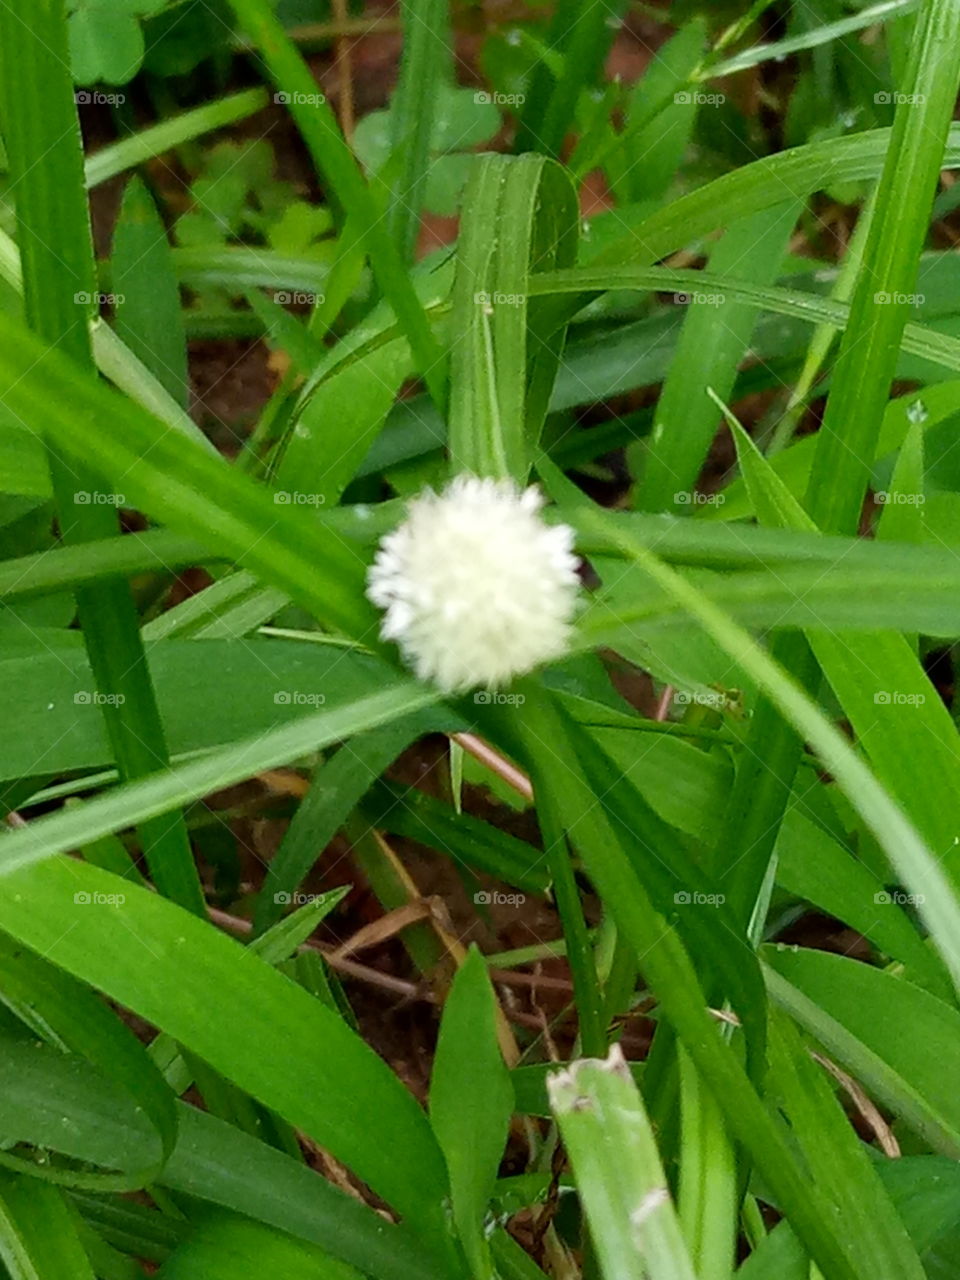 Grass flower